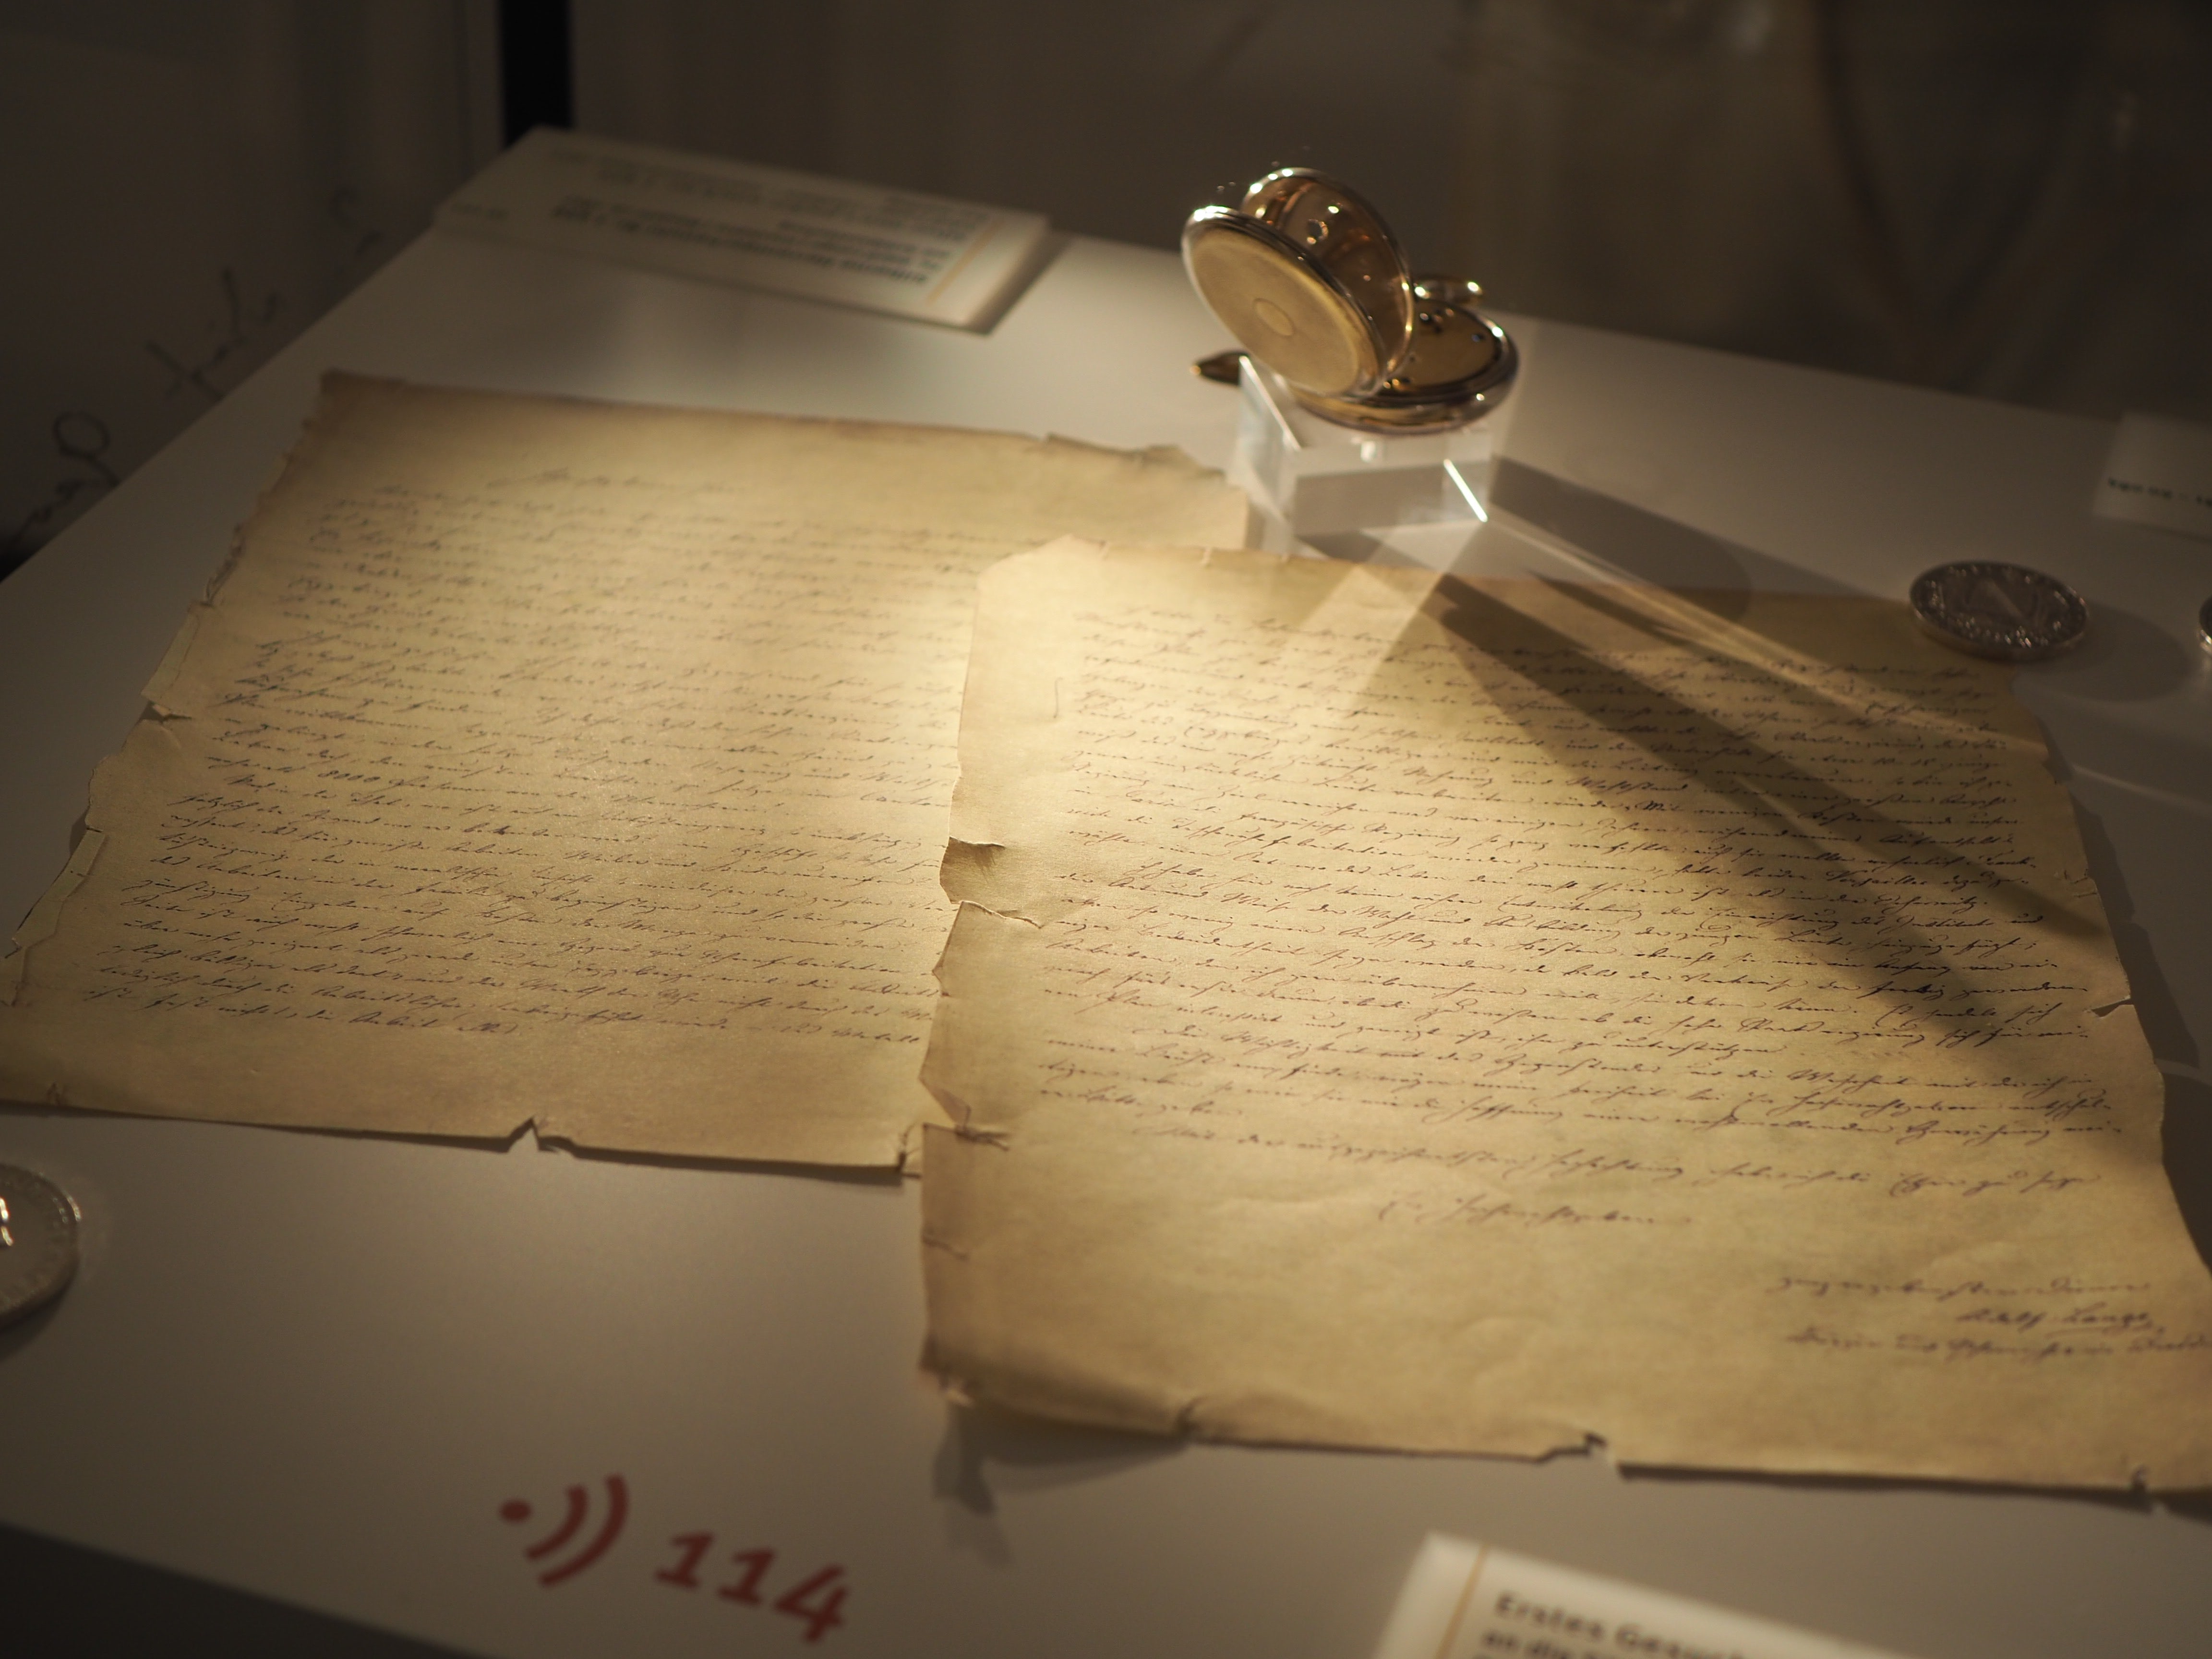 Письмо Ф.А. Ланге к Королевскому правительству Саксонии хранится в немецком Музее часового дела в Гласхютте